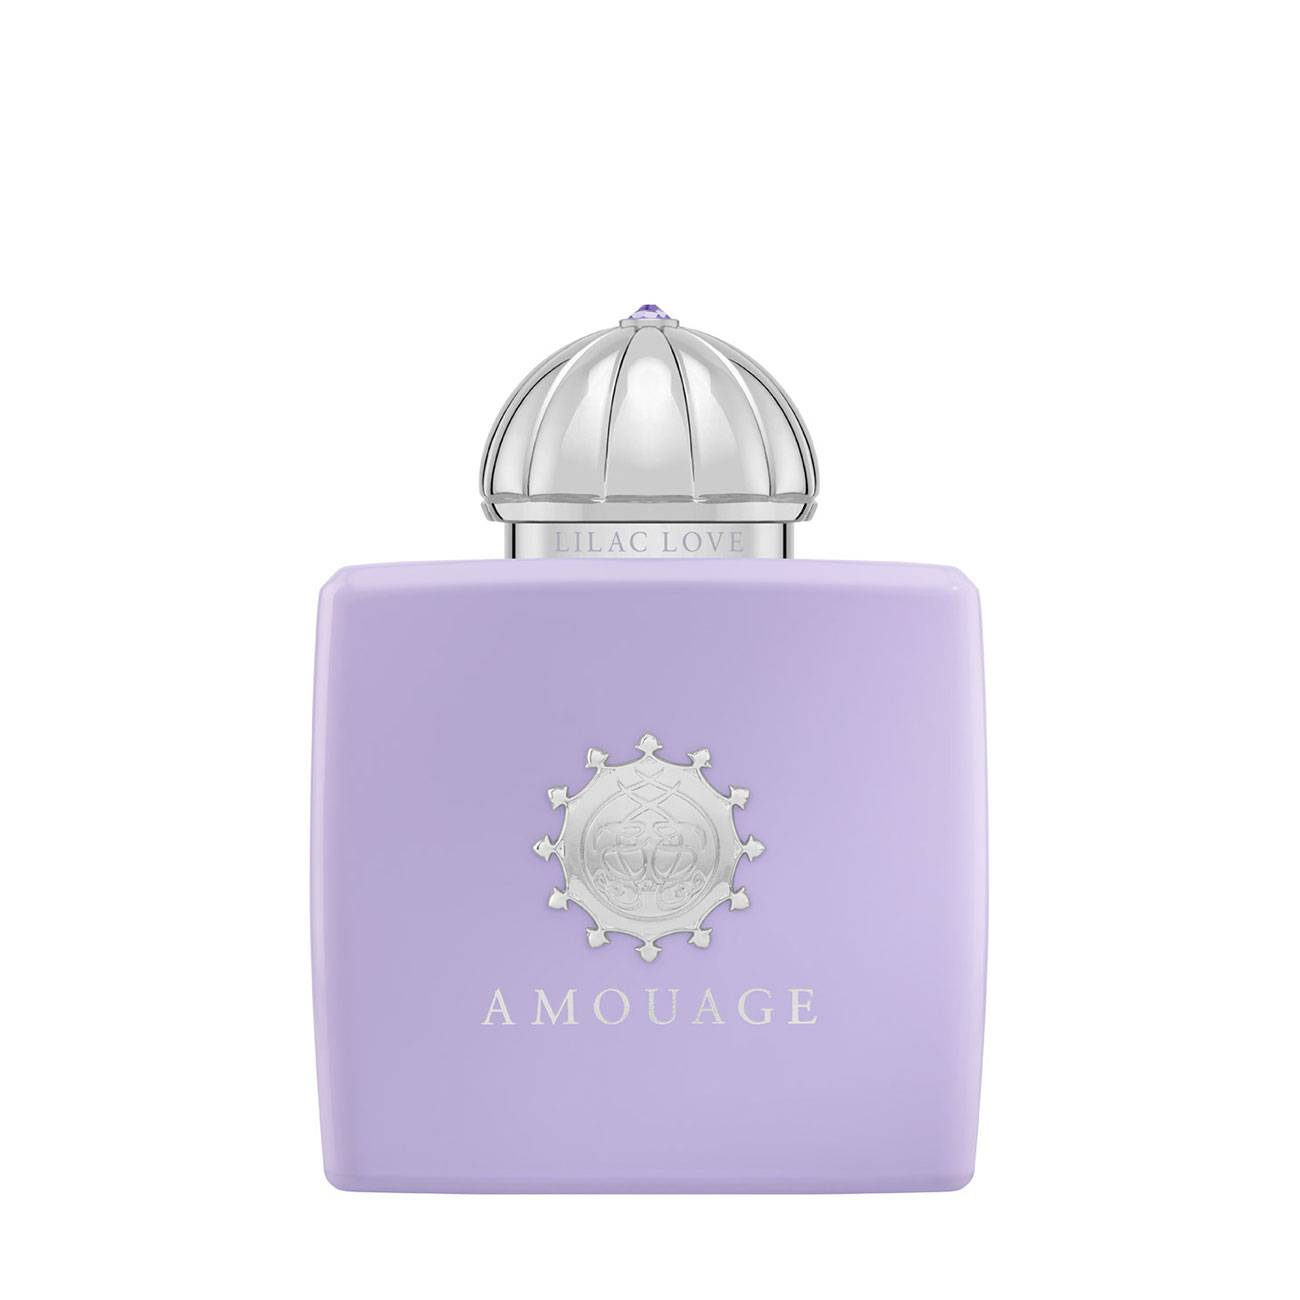 Parfum de niche Amouage LILAC LOVE 50ml cu comanda online